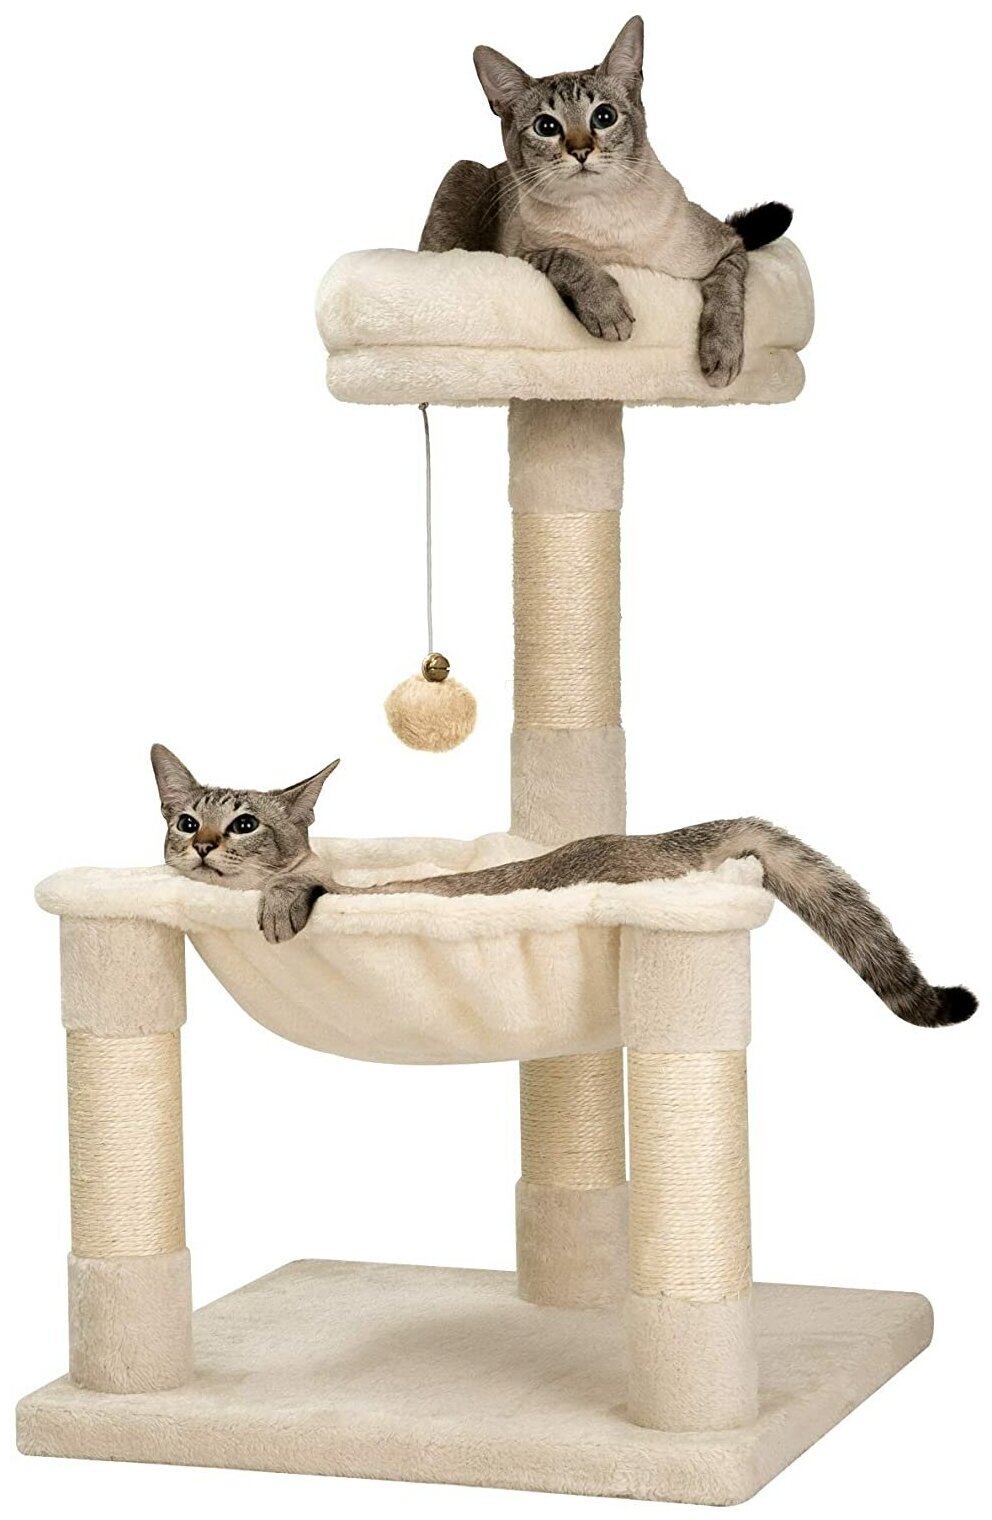 Когтеточка столбик гамак для кошек с лежанкой /домик для кошки/ игровойкомплекс для кошек игрушкой — купить в интернет-магазине по низкой цене наЯндекс Маркете